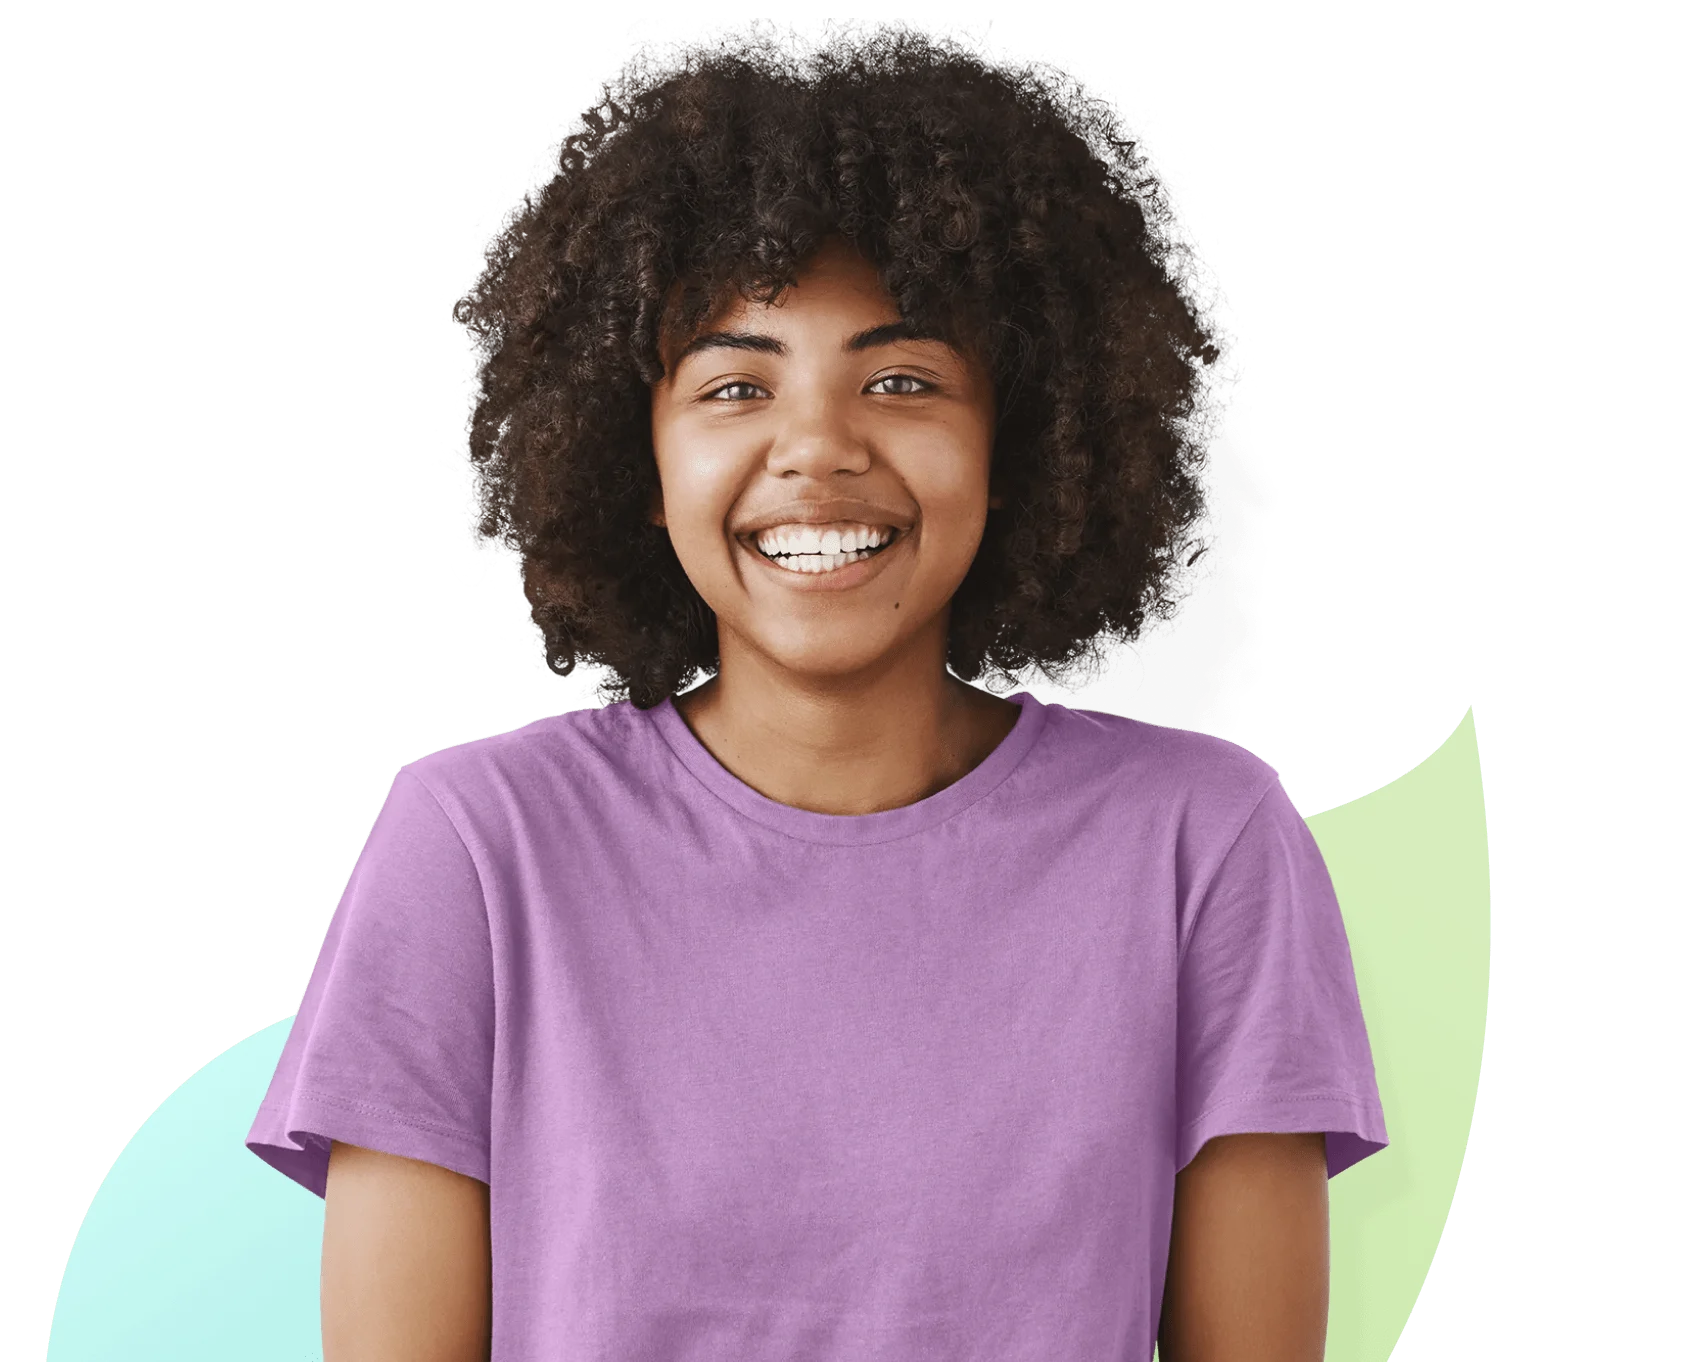 Une jeune fille souriante vêtue d’un t-shirt violet regarde droit devant elle.